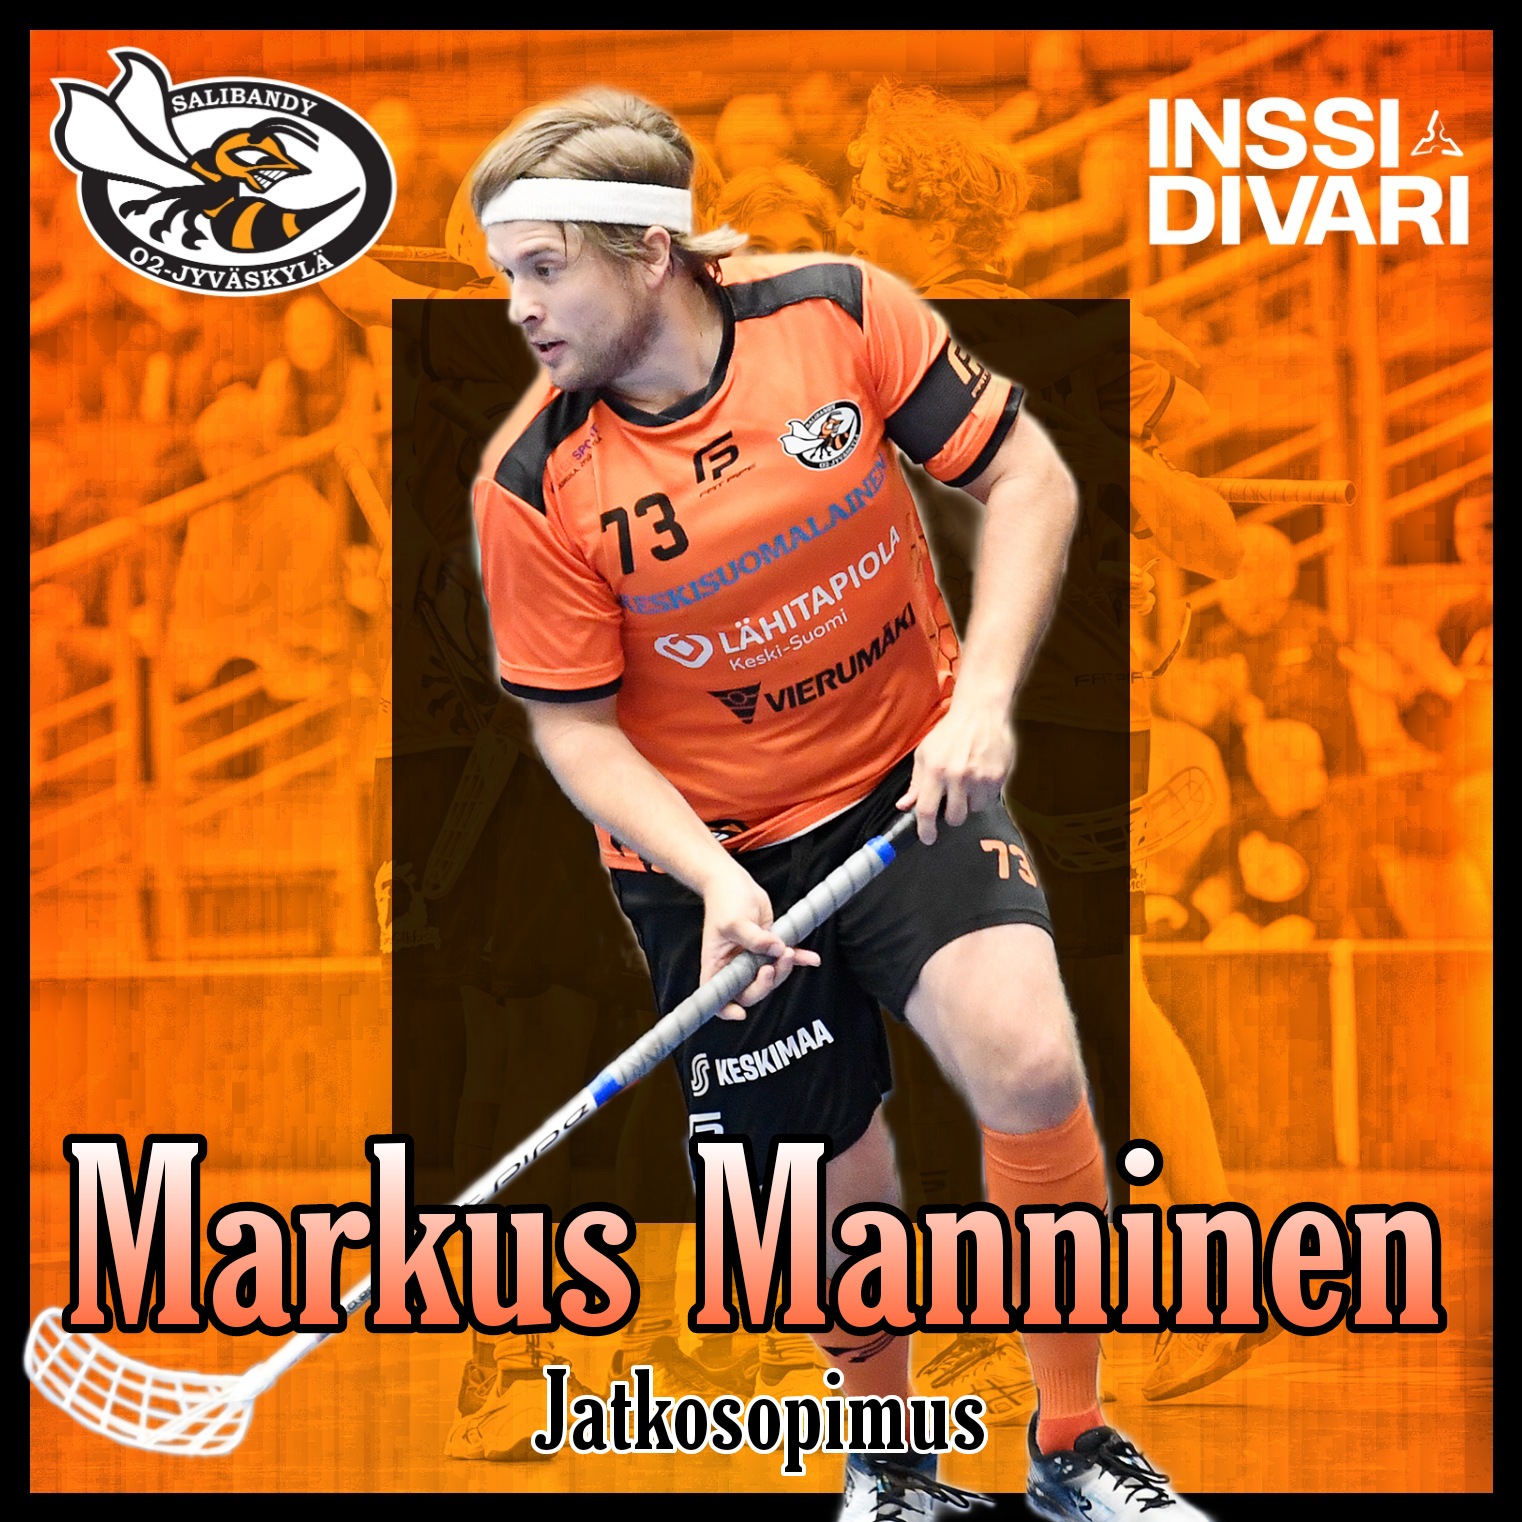 Markus Manninen